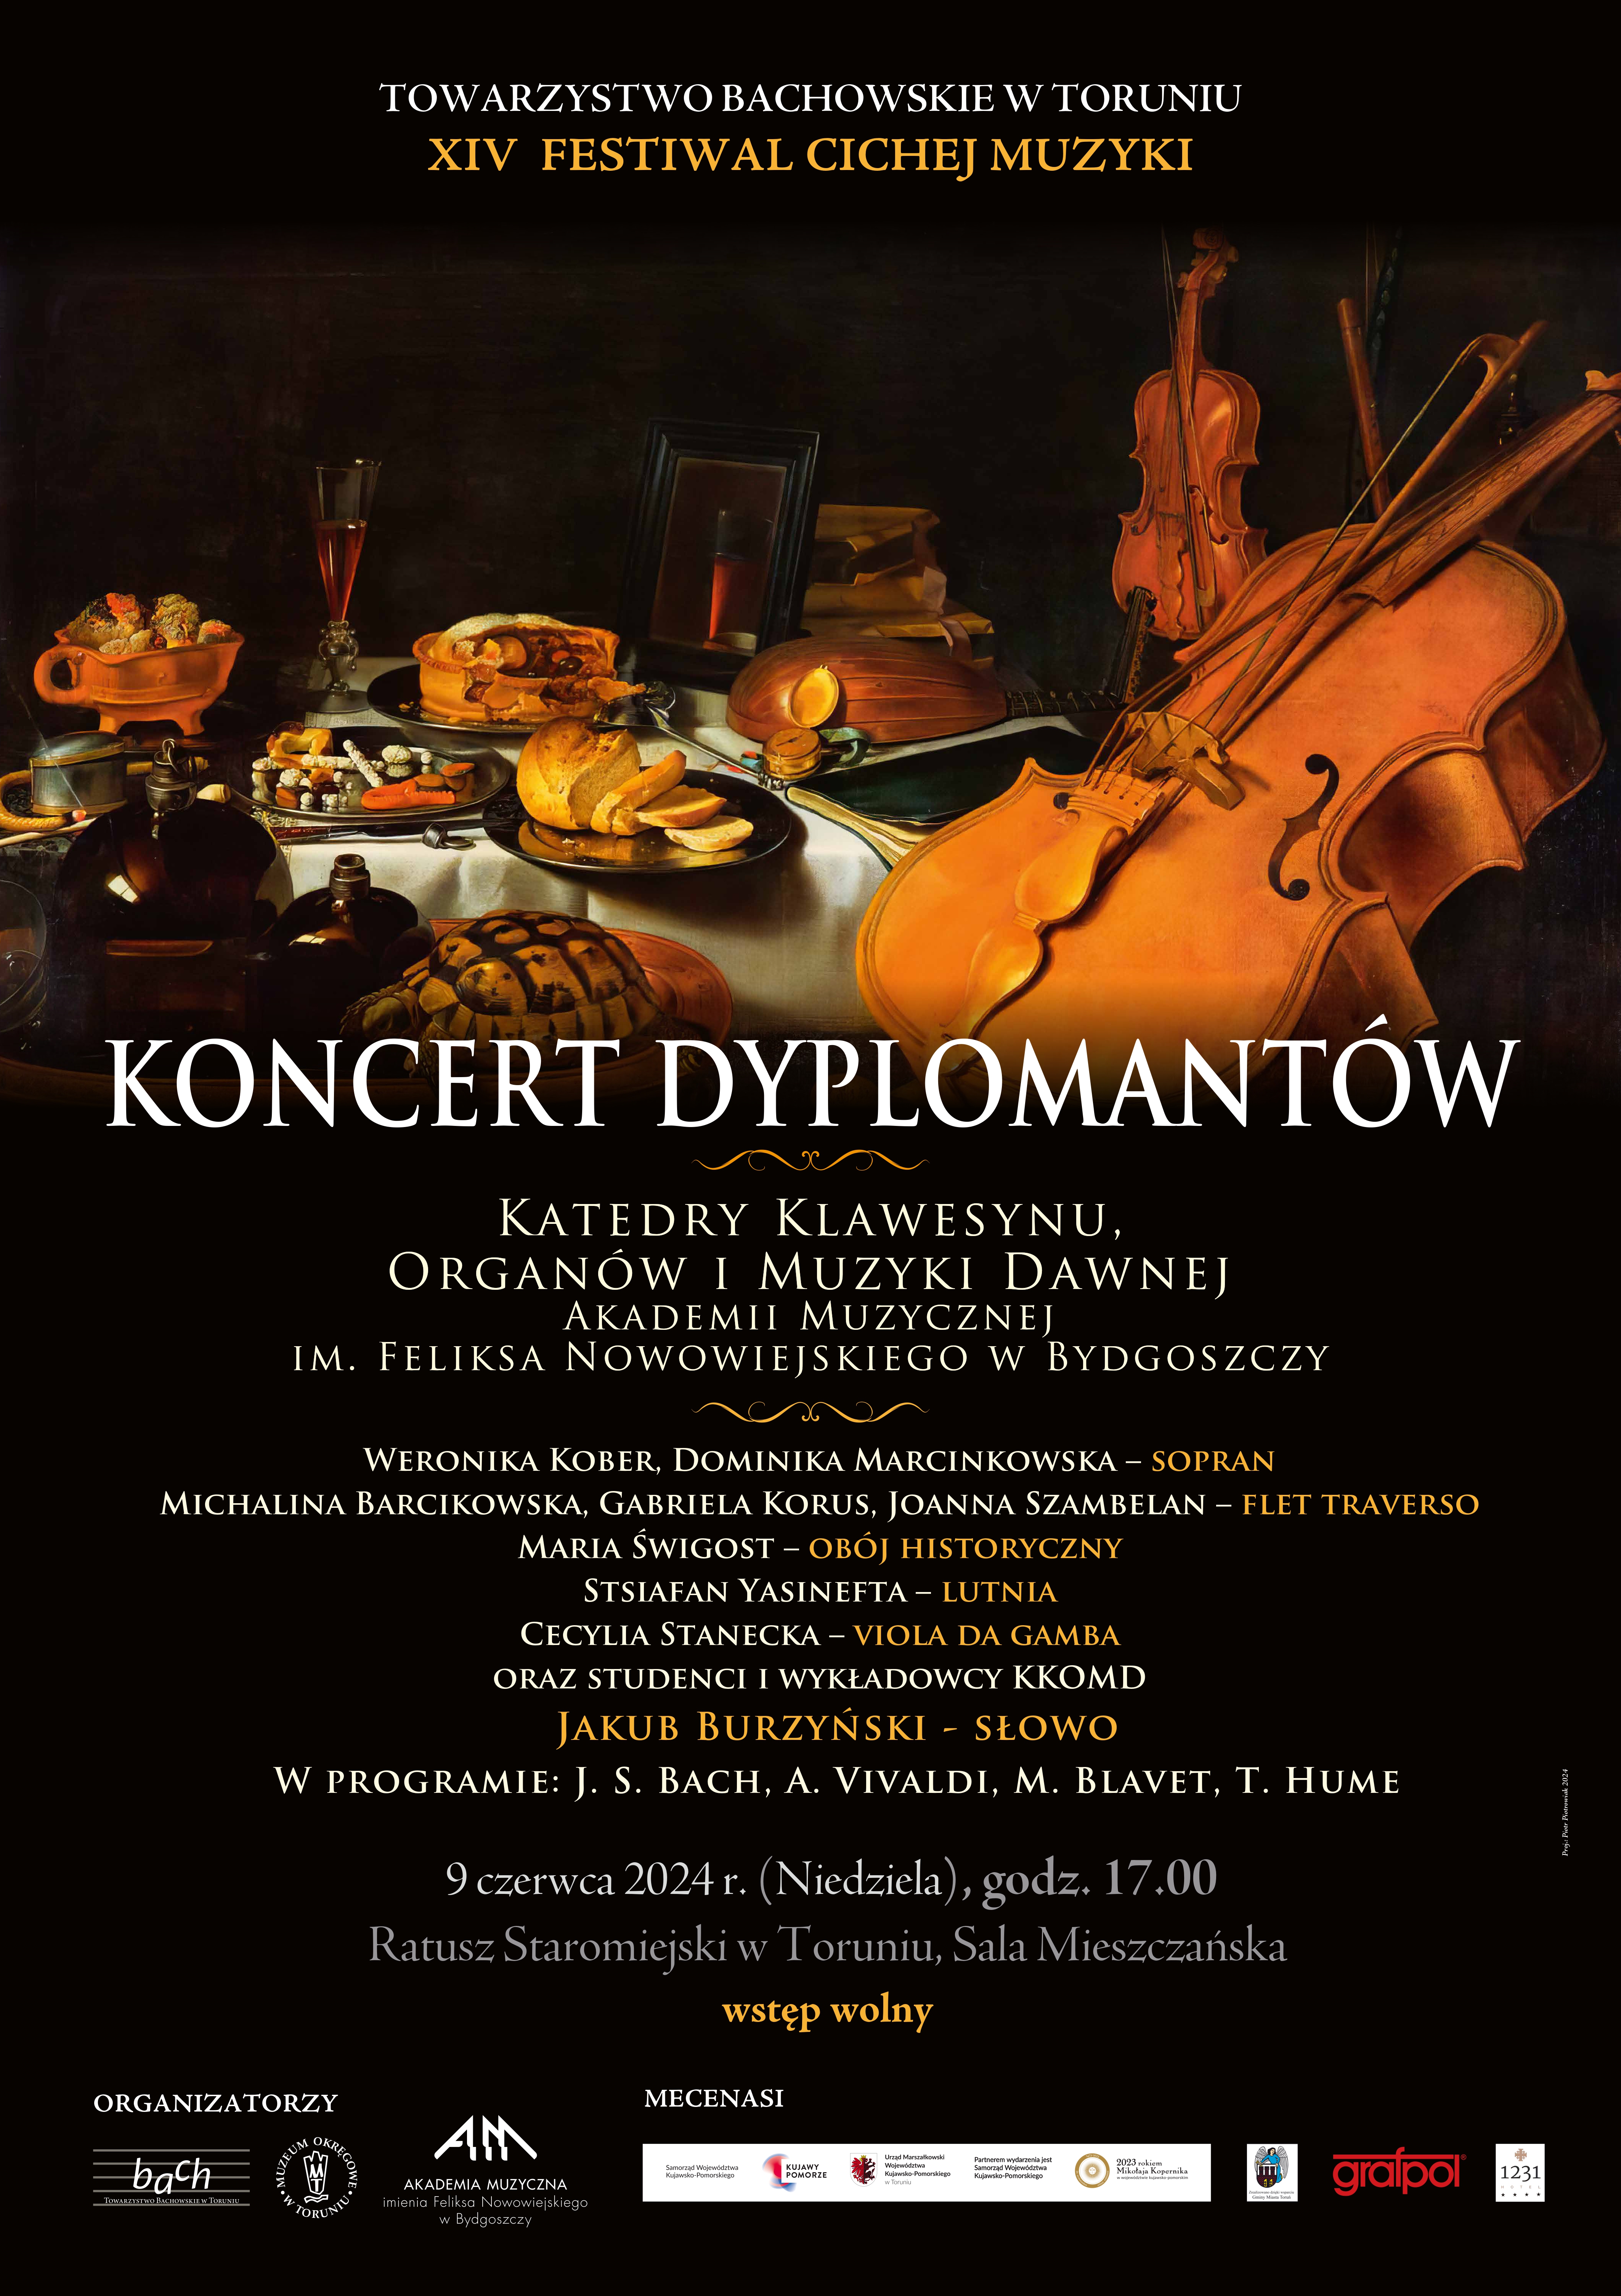 Koncert dyplomantów bydgoskiej Akademii Muzycznej w ramach XIV Festiwalu Cichej Muzyki